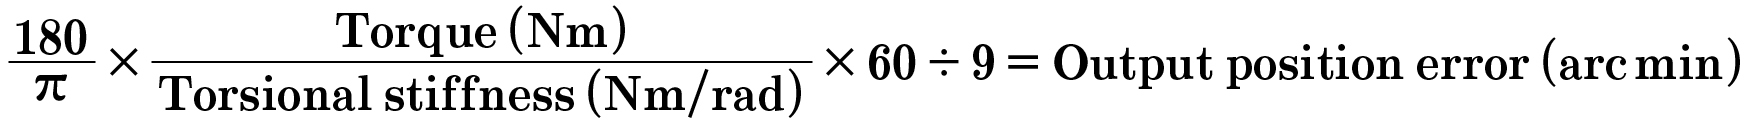 pt0423-pg35-equation-1.jpg